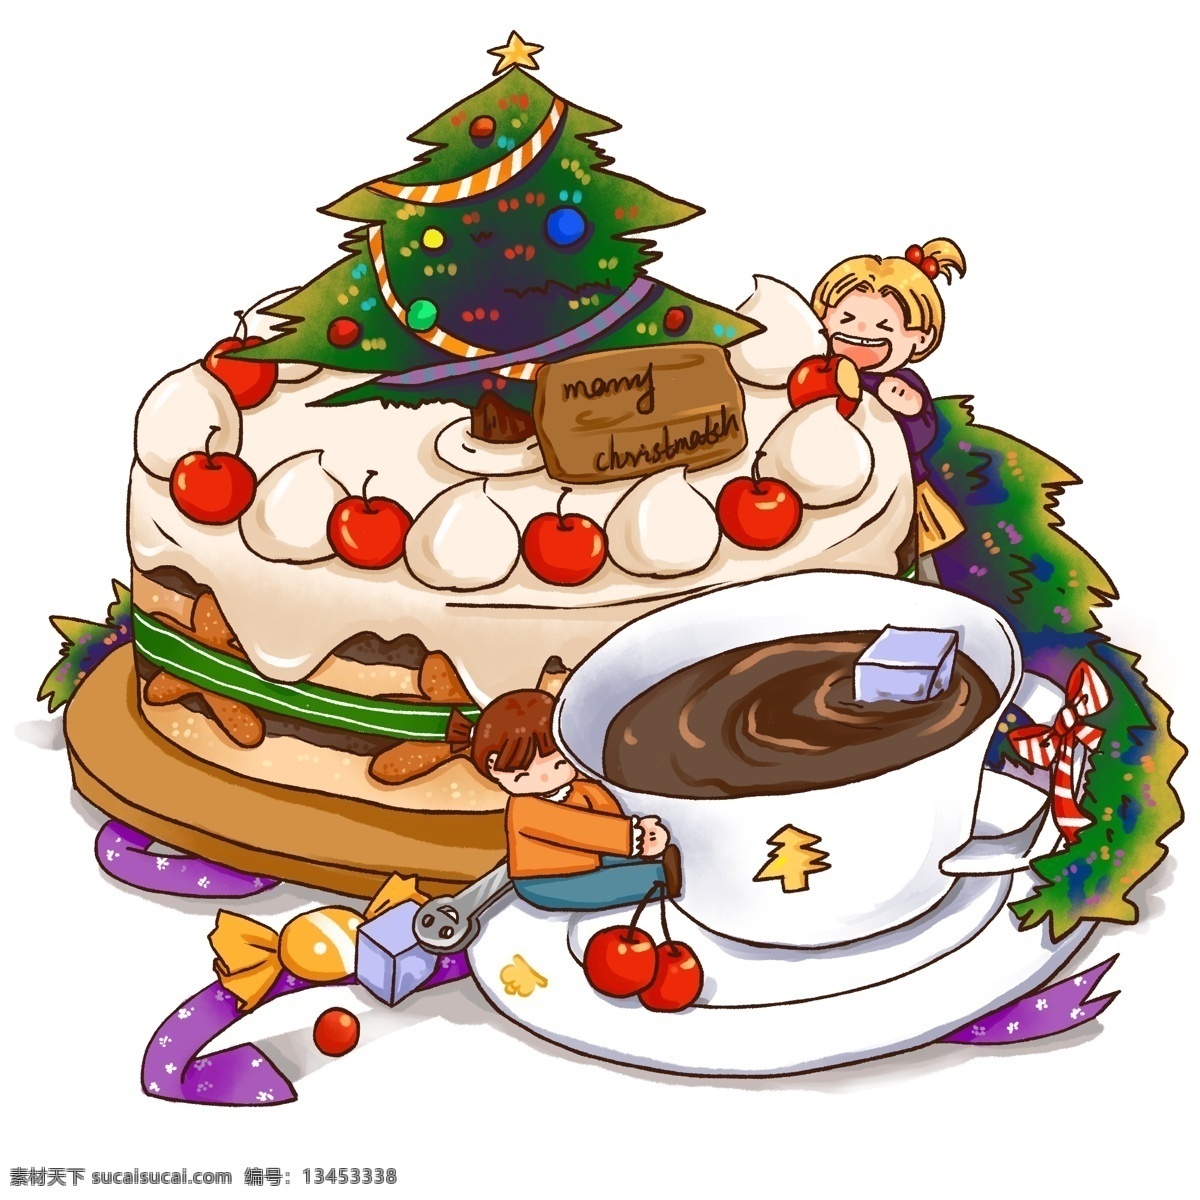 圣诞节 美食 蛋糕 咖啡 人物 免 抠 甜点 糖果 圣诞树 奶油蛋糕 方糖 小女孩 咖啡杯 樱桃蛋糕 松枝 彩带